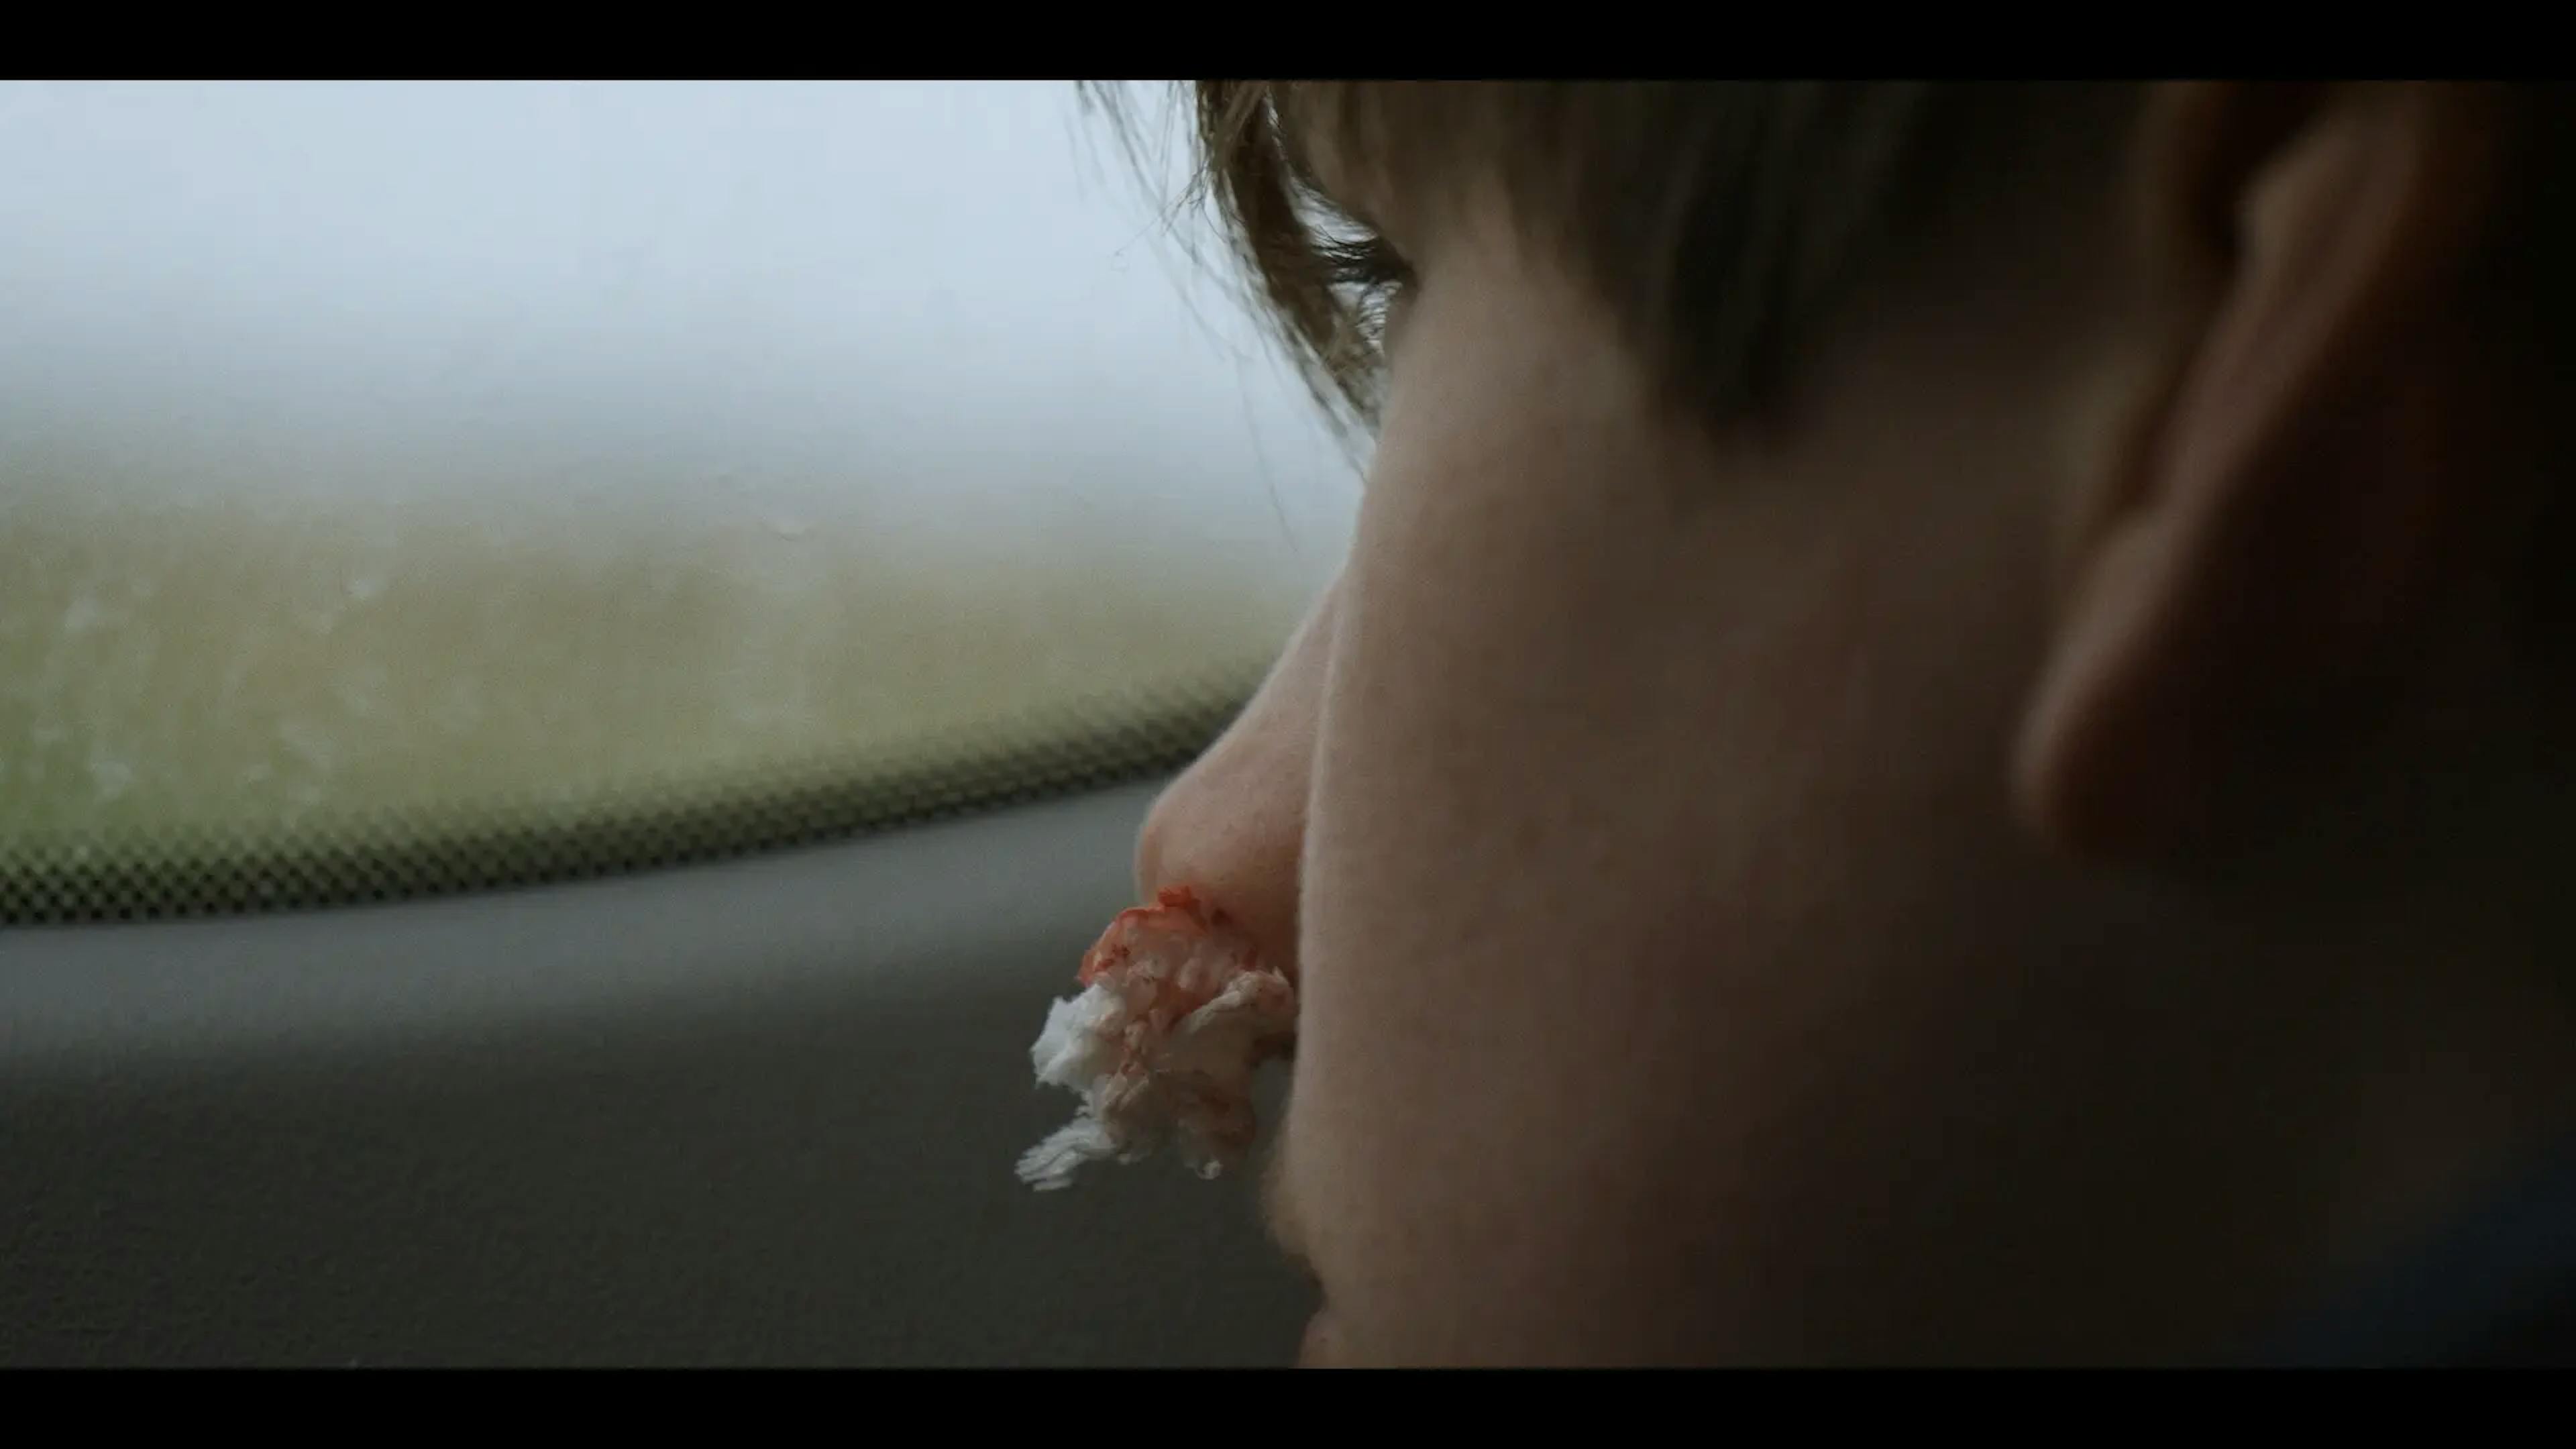 Still from the Short film HOLD KÆFT (SHUT UP